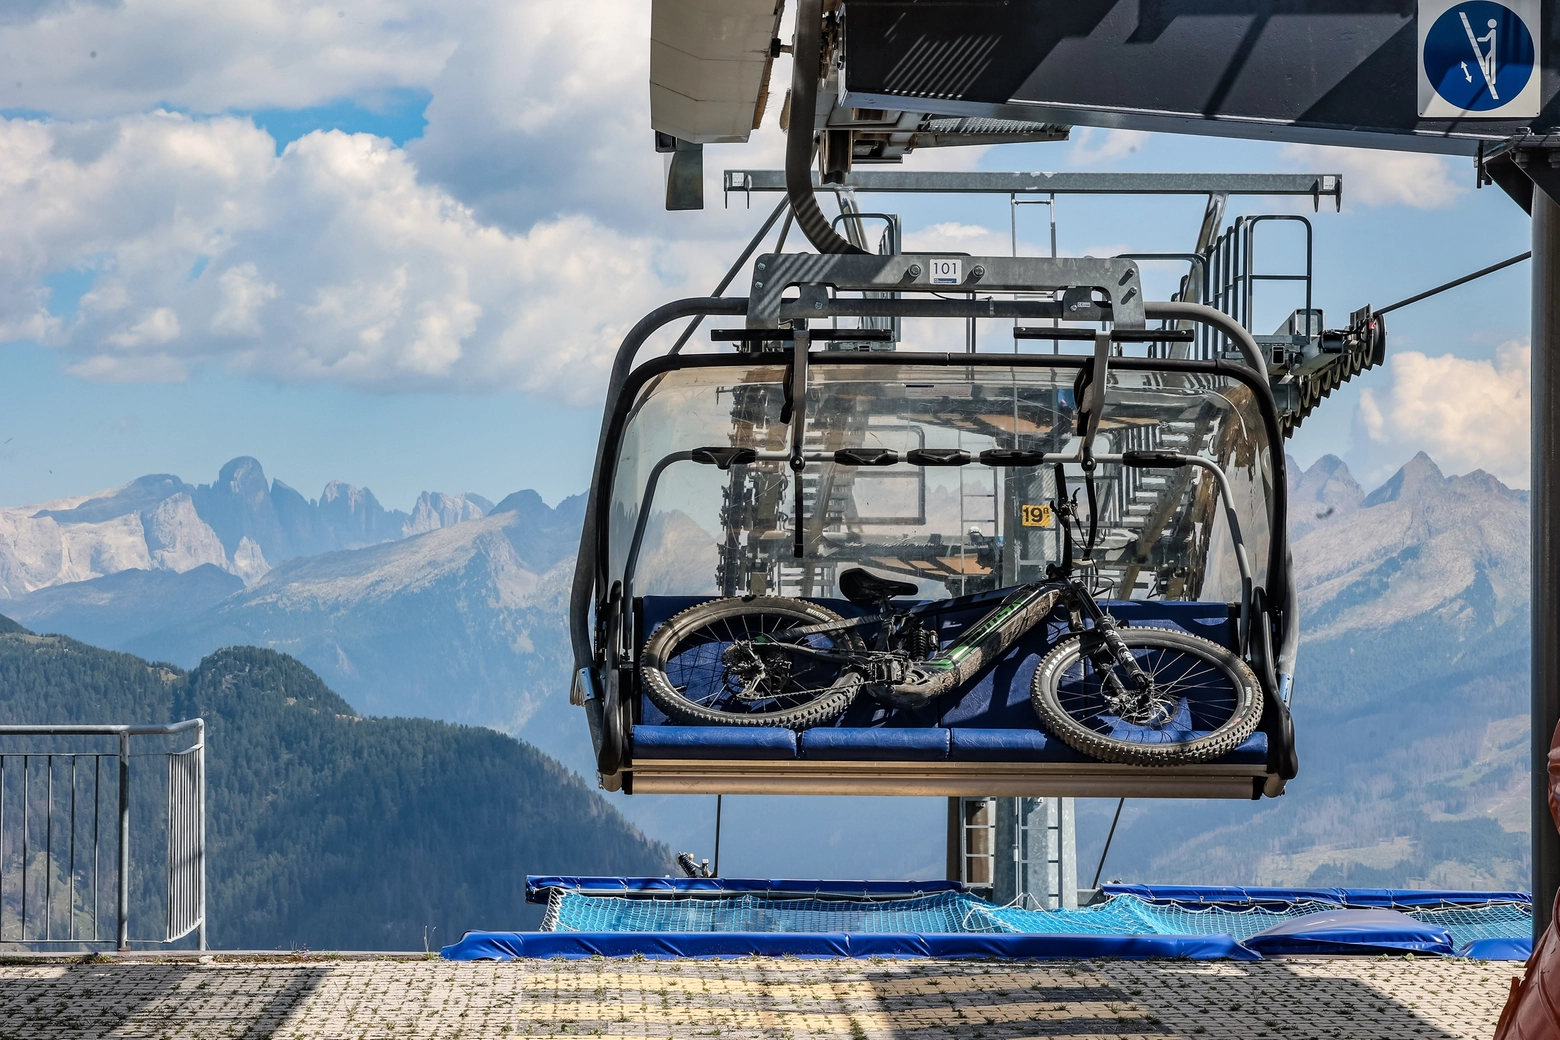 Percorsi in bici in Val D'Ega, assistenza e servizi dedicati